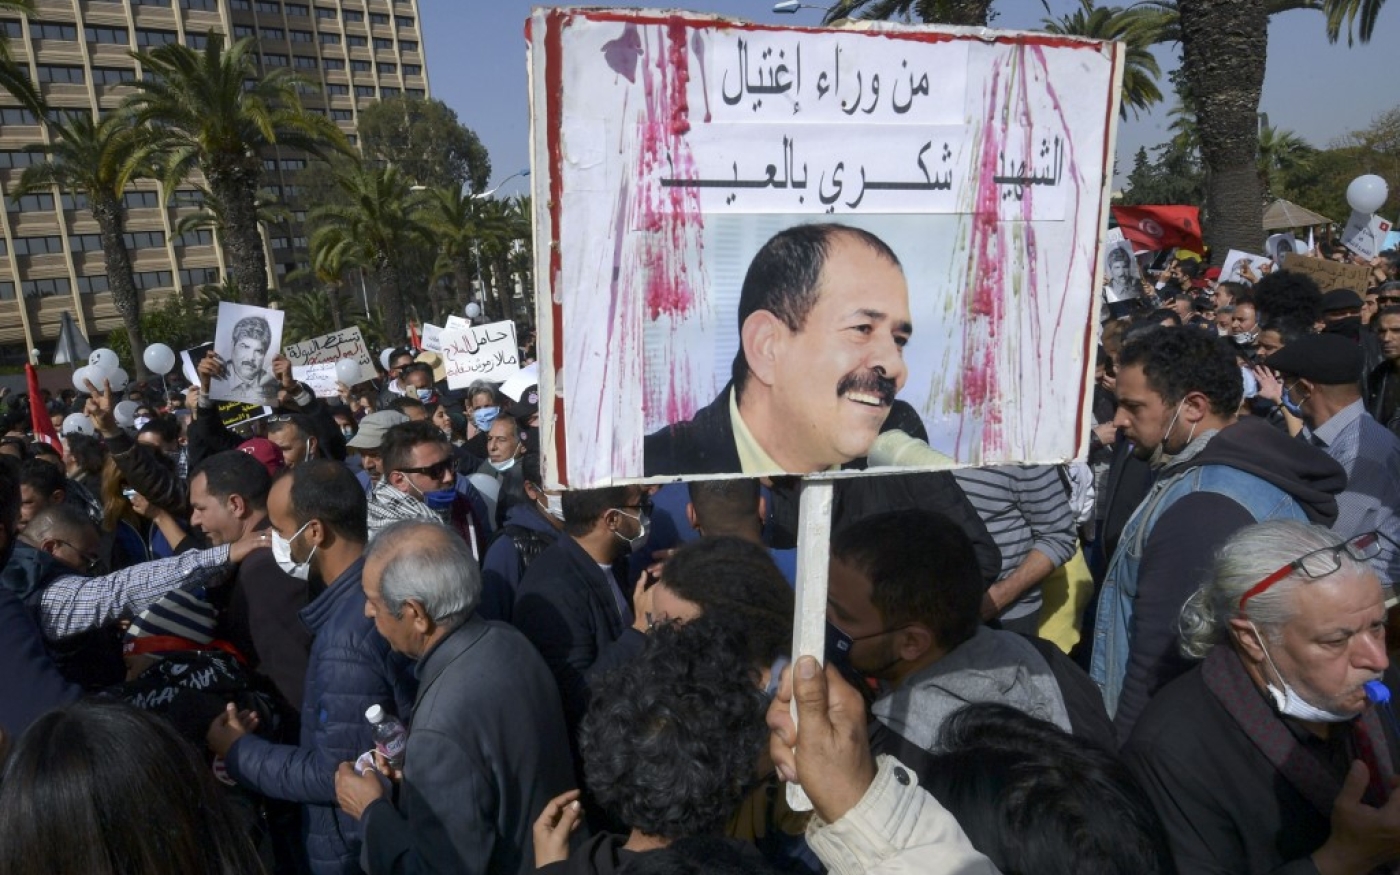 Un manifestant brandit une pancarte demandant à savoir qui a assassiné Chokri Belaïd, lors d’une marche à l’occasion du 8e anniversaire de sa mort, à Tunis le 6 février 2021 (AFP)